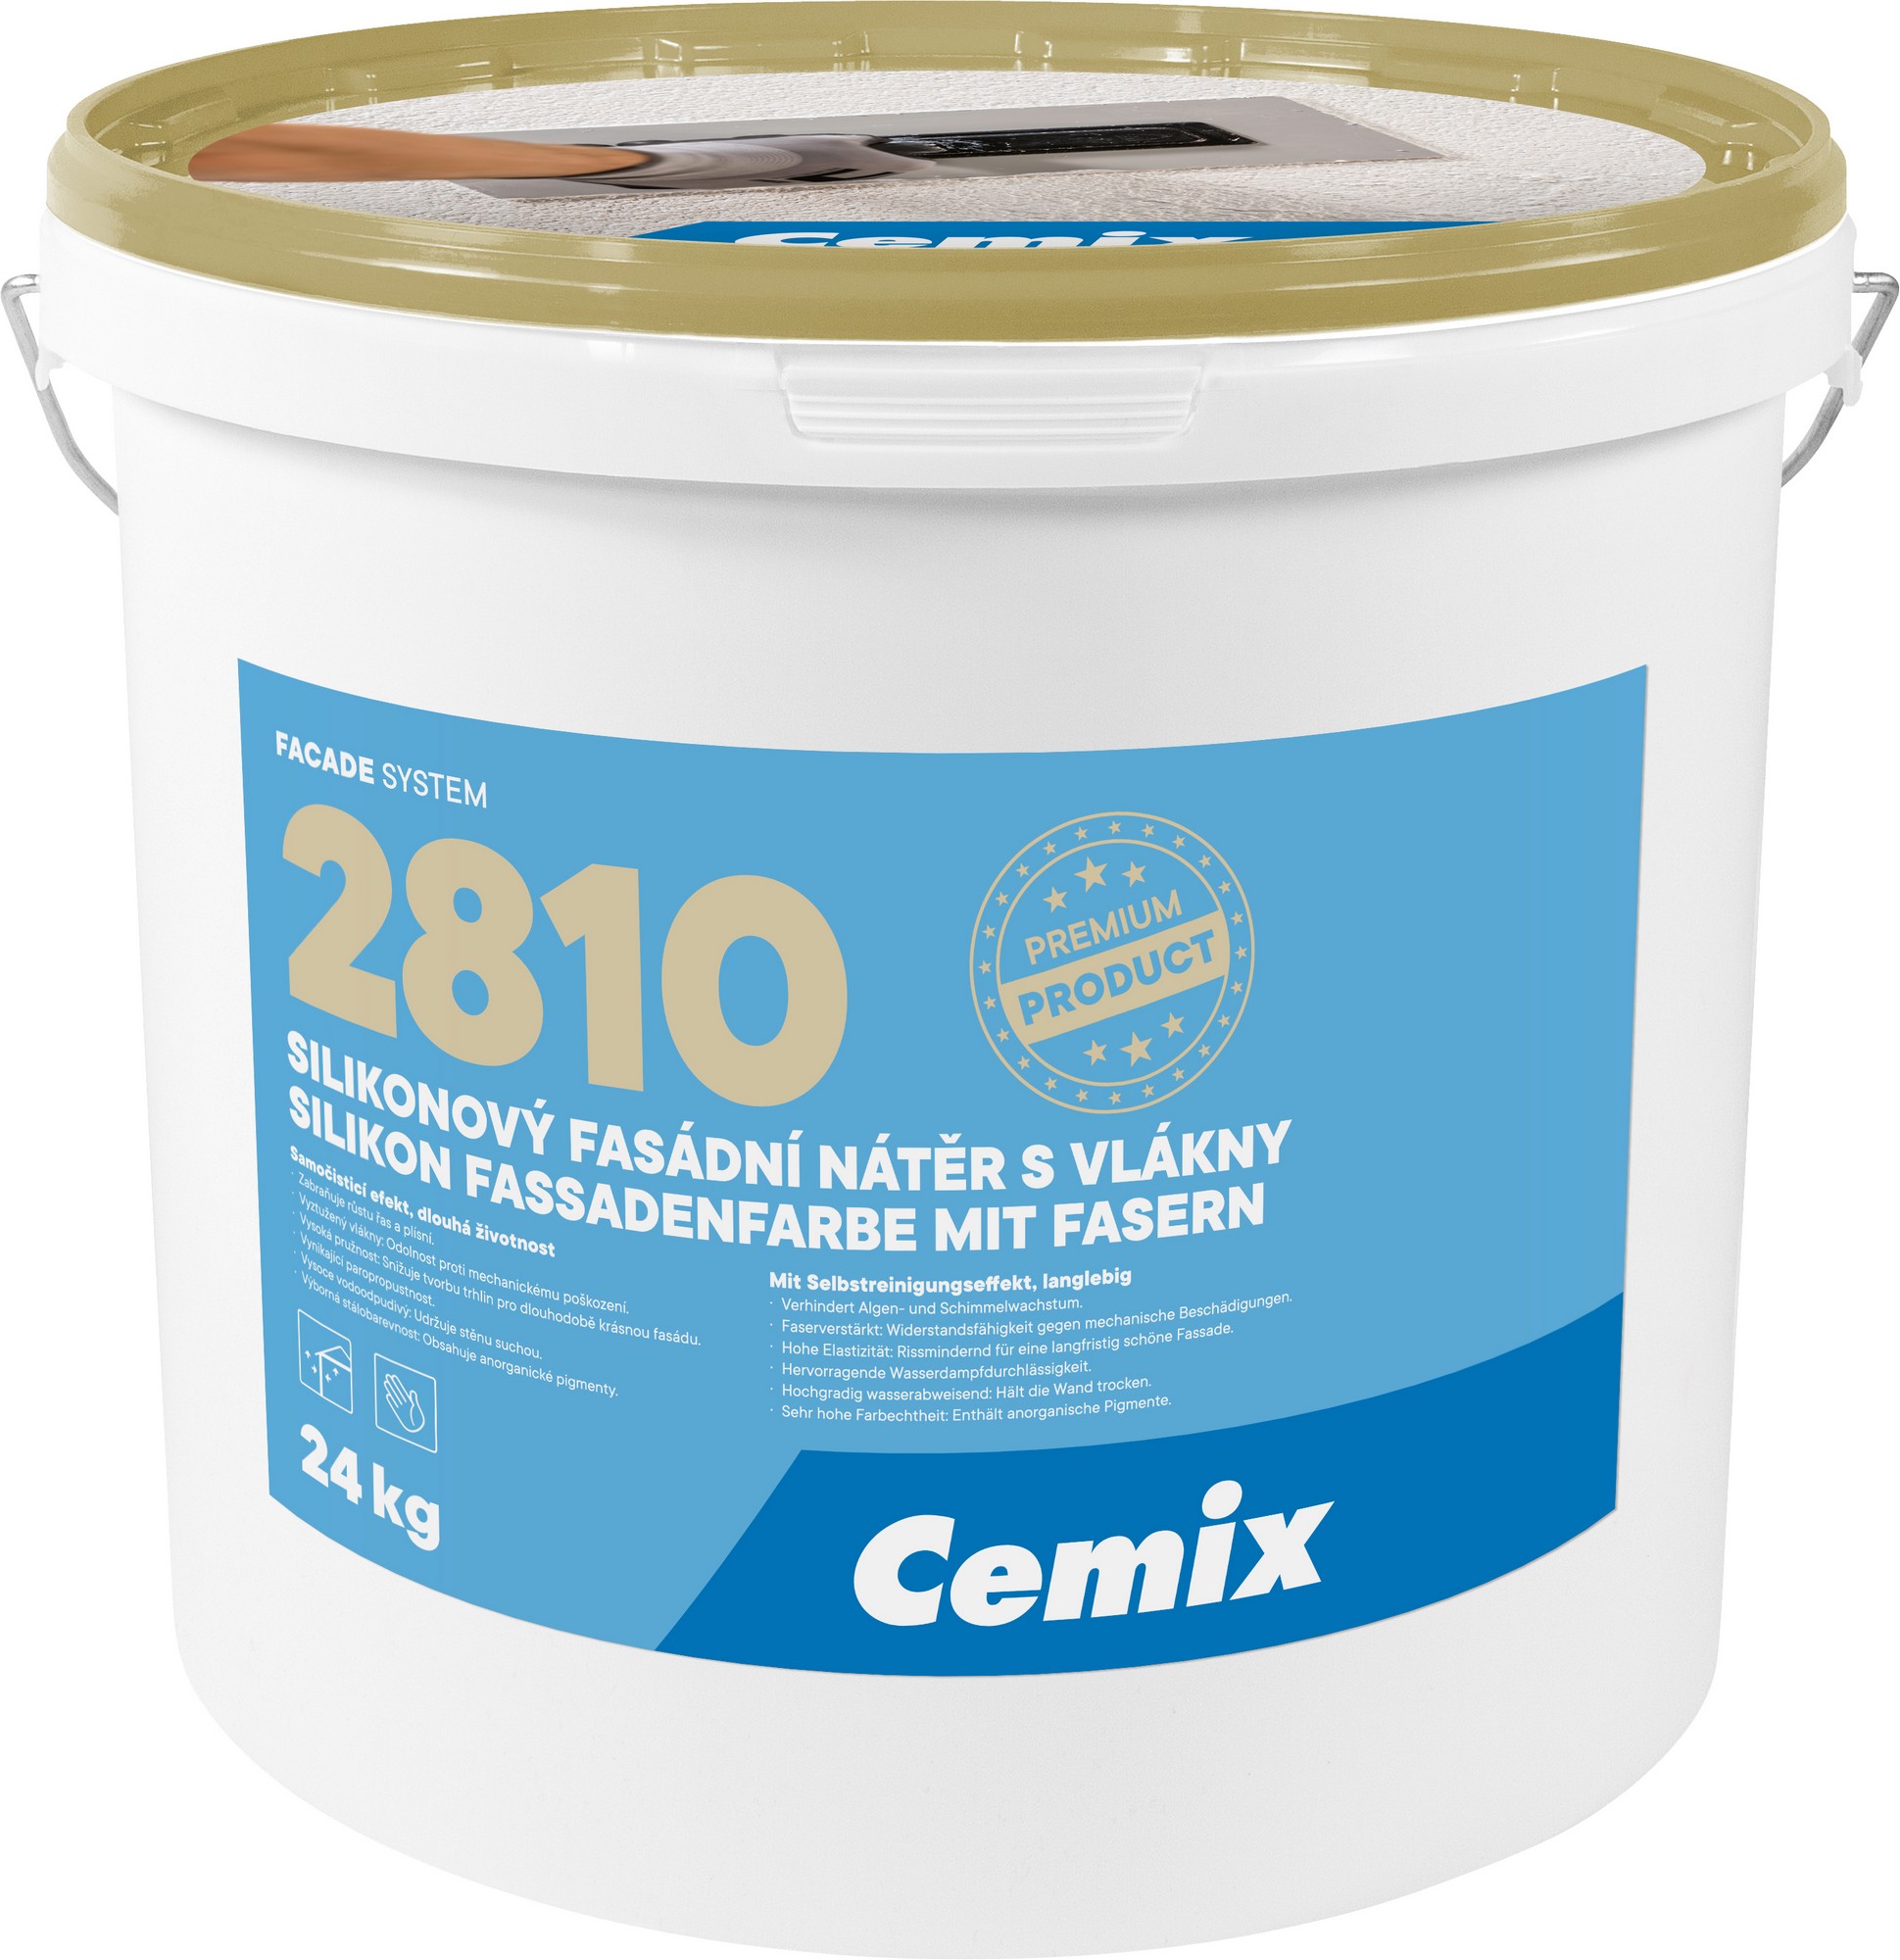 Nátěr fasádní silikonový Cemix 2810 s vlákny 24 kg Cemix